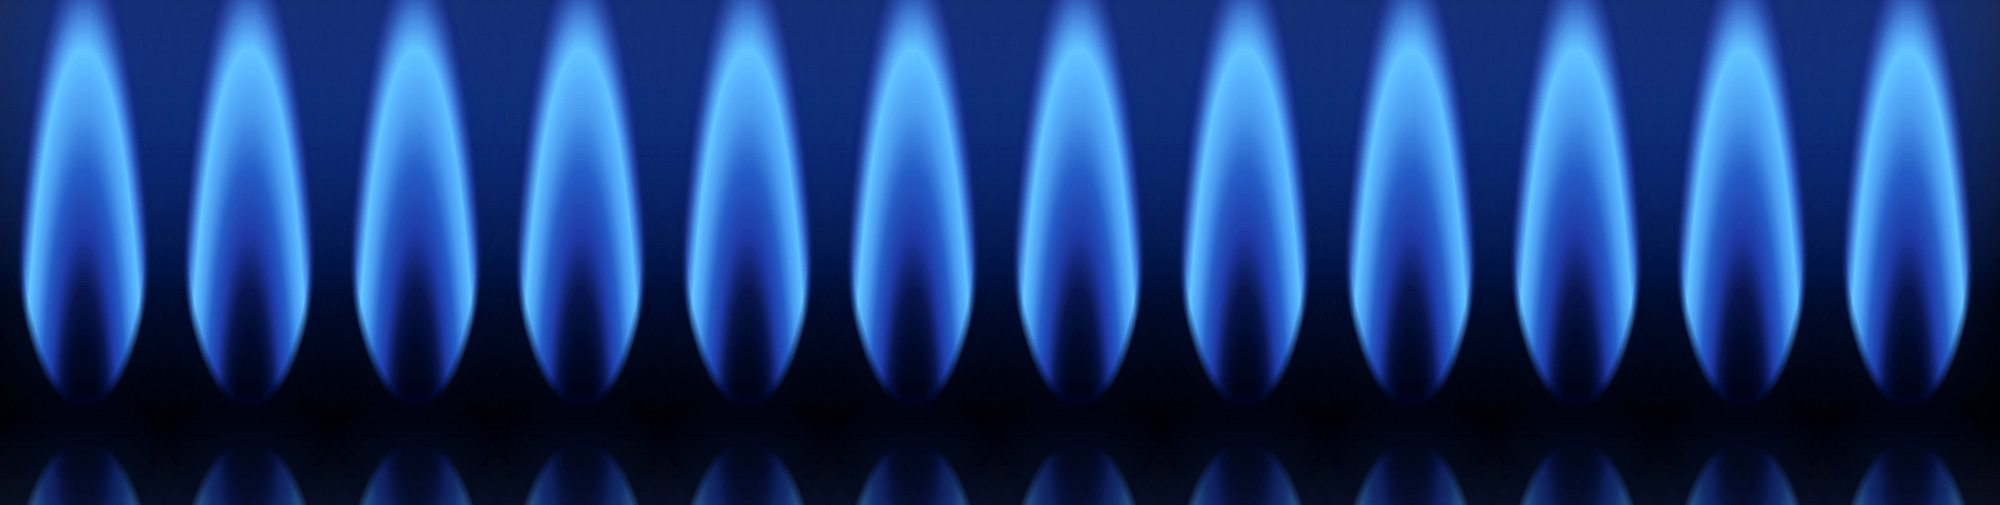 Butane ou propane : quelle différence et quel gaz choisir ?